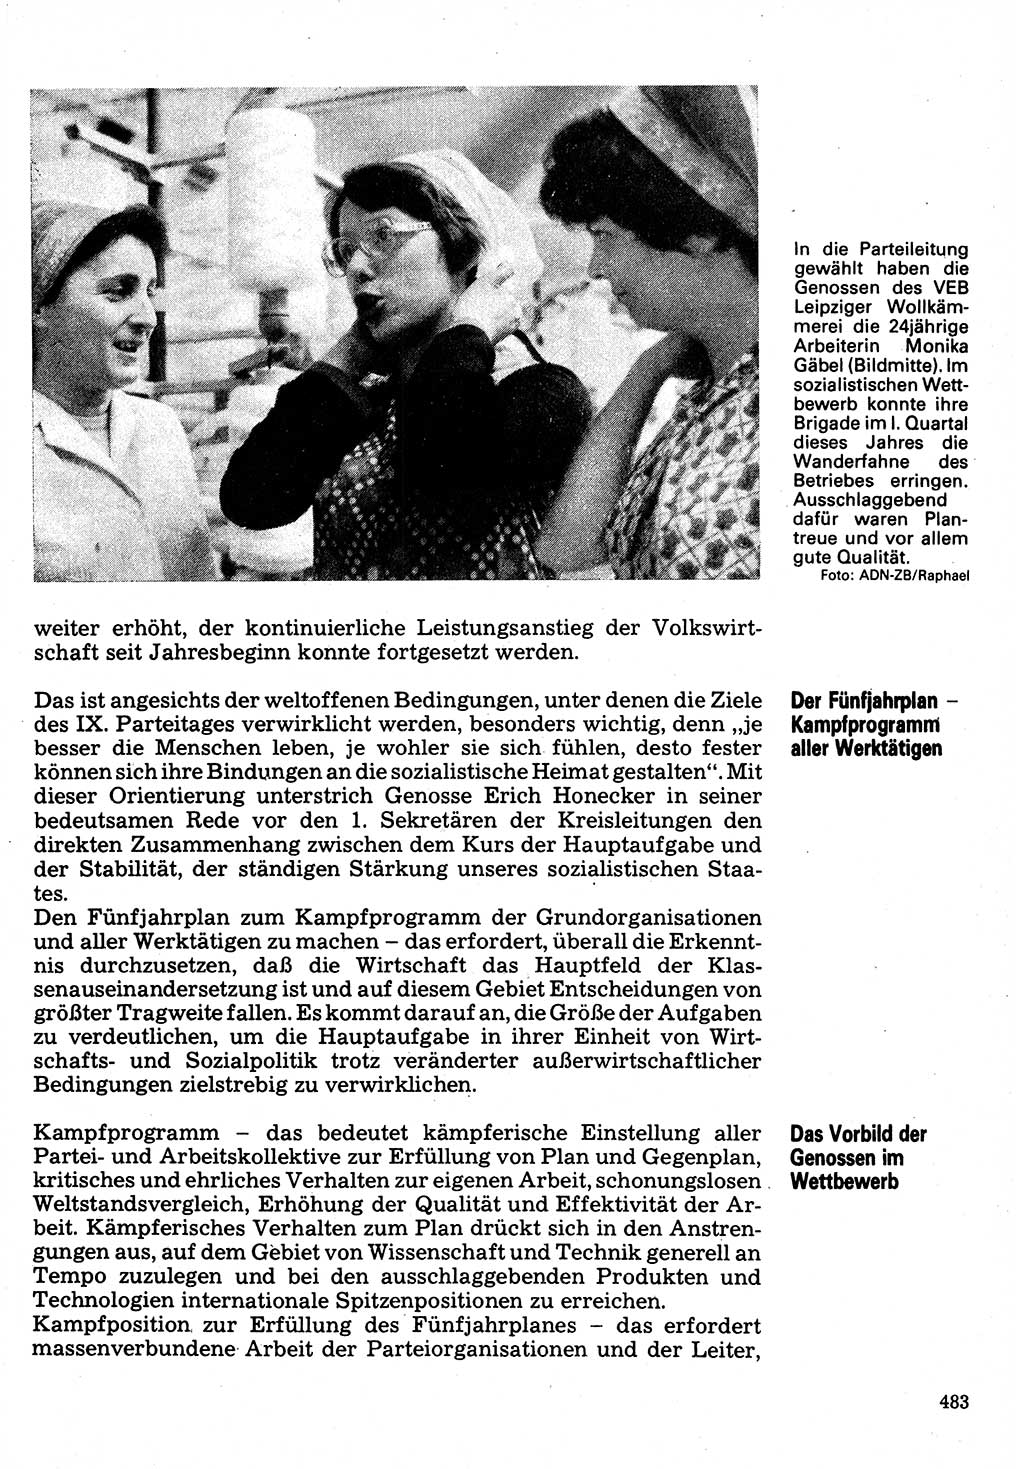 Neuer Weg (NW), Organ des Zentralkomitees (ZK) der SED (Sozialistische Einheitspartei Deutschlands) für Fragen des Parteilebens, 32. Jahrgang [Deutsche Demokratische Republik (DDR)] 1977, Seite 483 (NW ZK SED DDR 1977, S. 483)